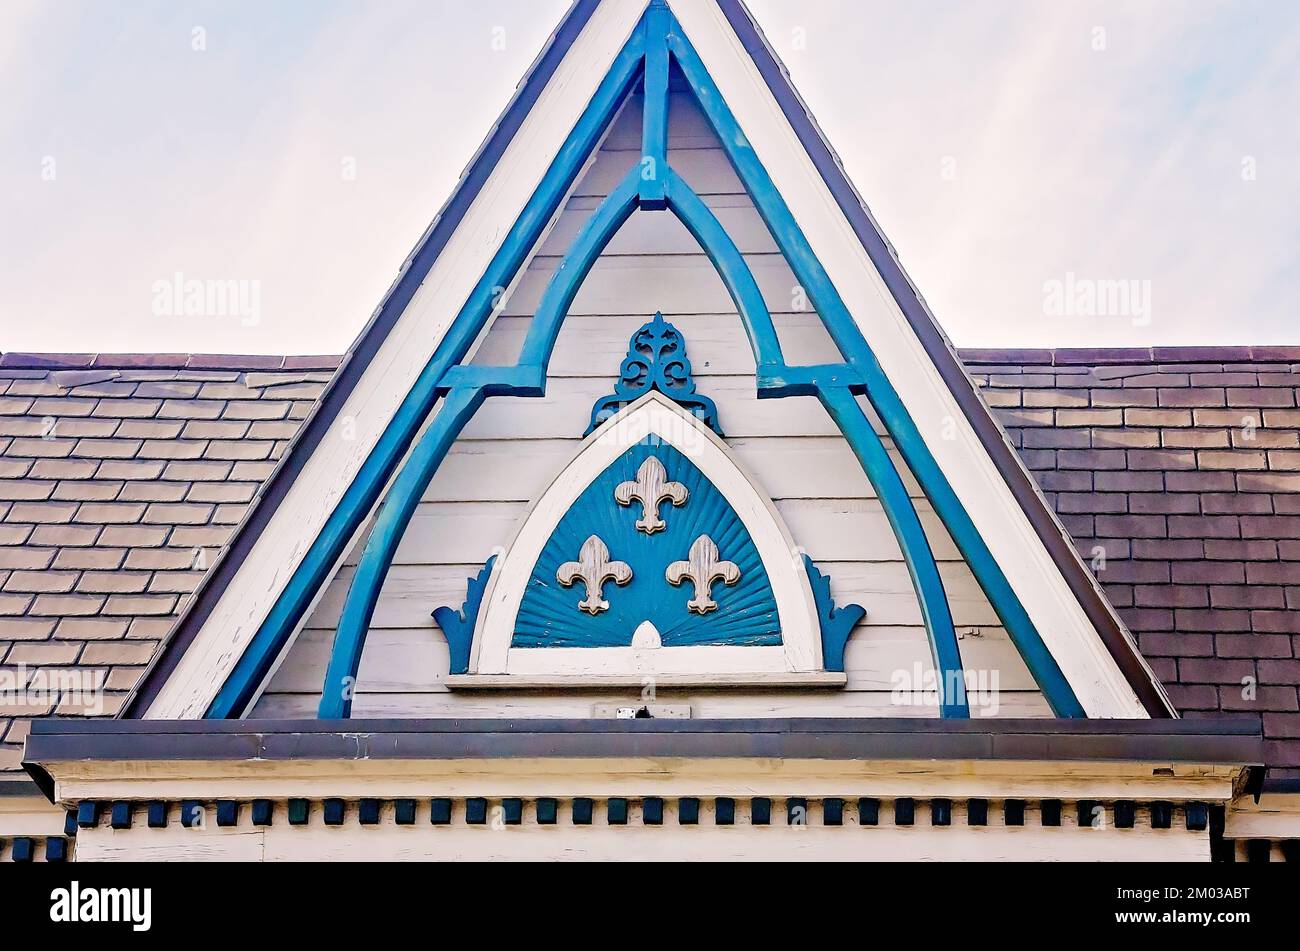 Fleurs-de-LIS und andere architektonische Details schmücken die Dachgabel eines Hauses im French Quarter am 11. November 2015 in New Orleans, Louisiana. Stockfoto